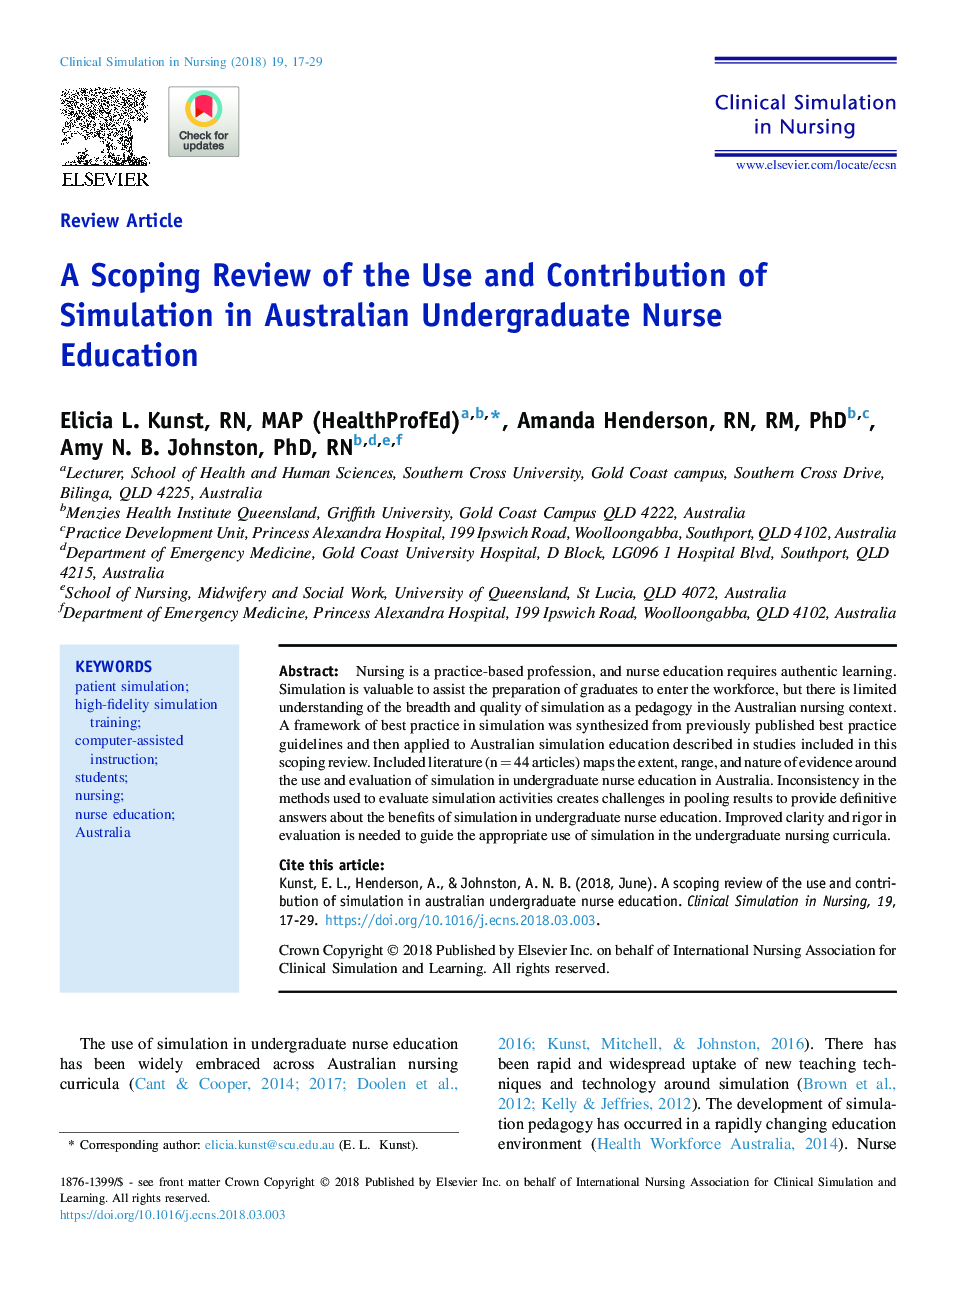 یک مرور کلی از استفاده و سهم شبیه سازی در تحصیلات پرستاری کارشناسی ارشد استرالیا 